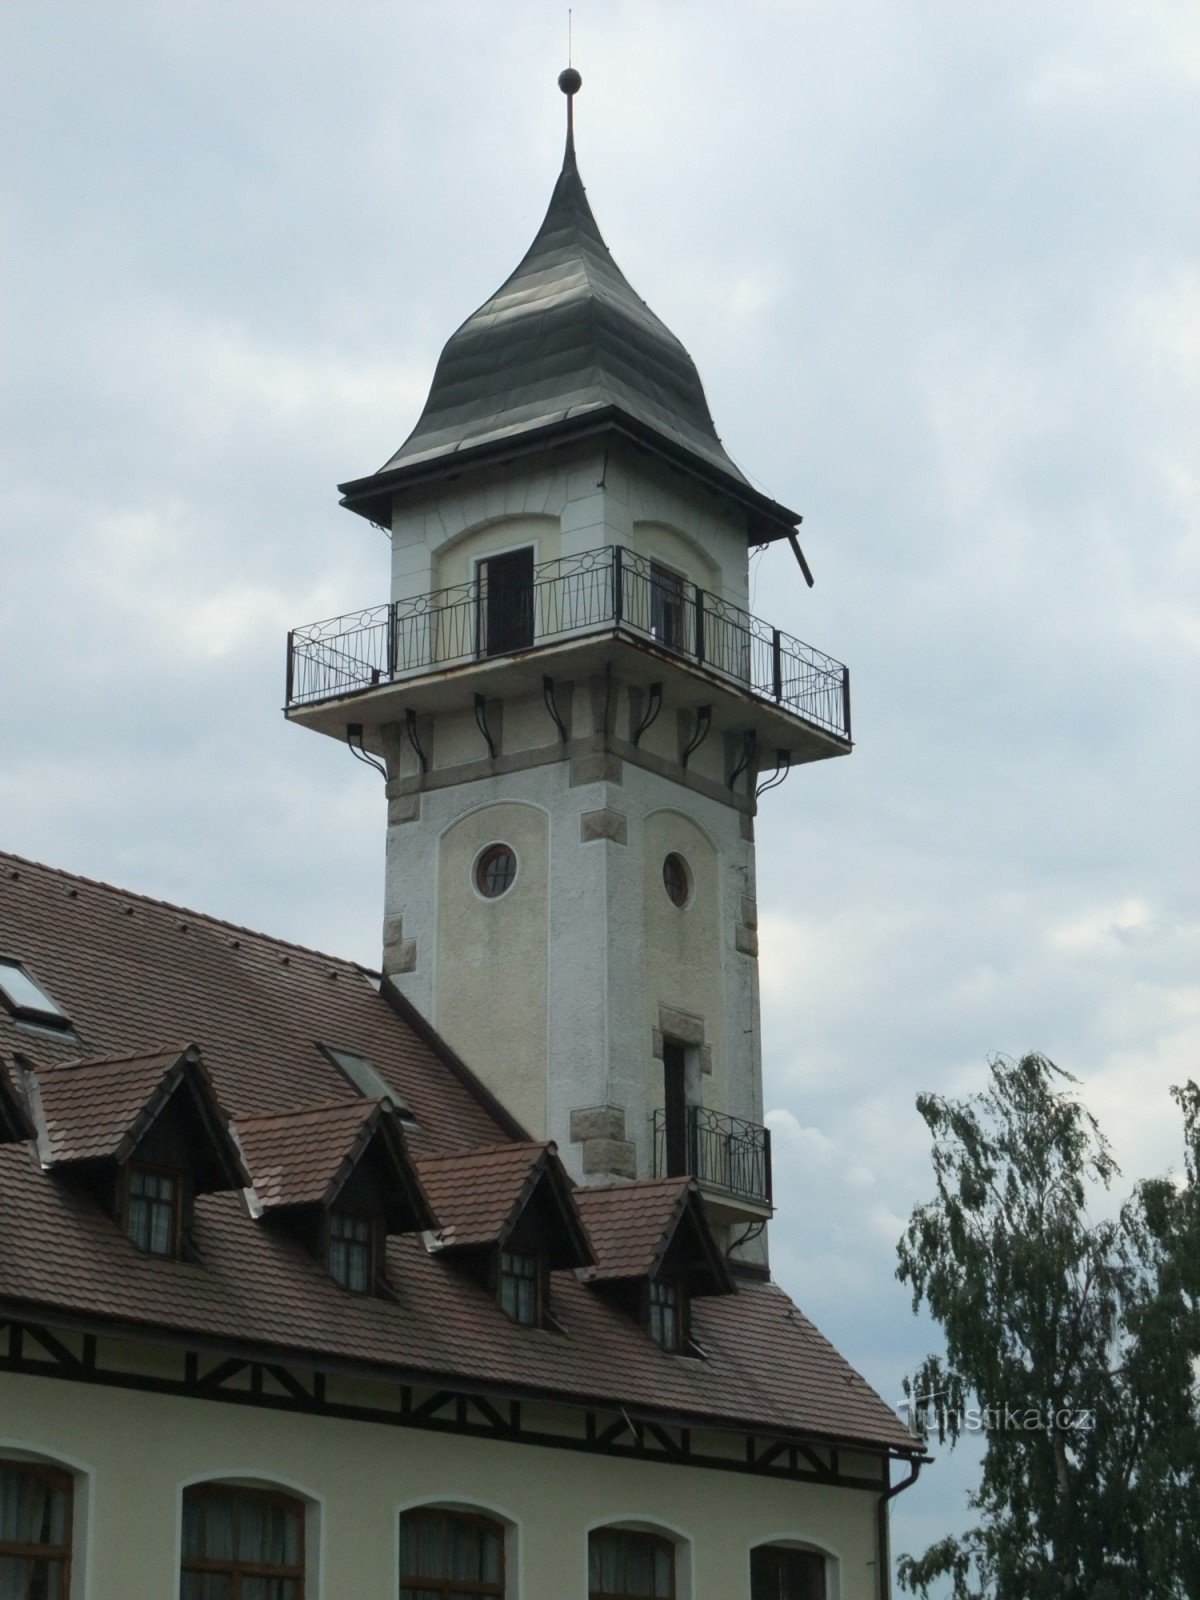 Wieża widokowa Petřín - Jablonec nad Nisou jak w dłoni